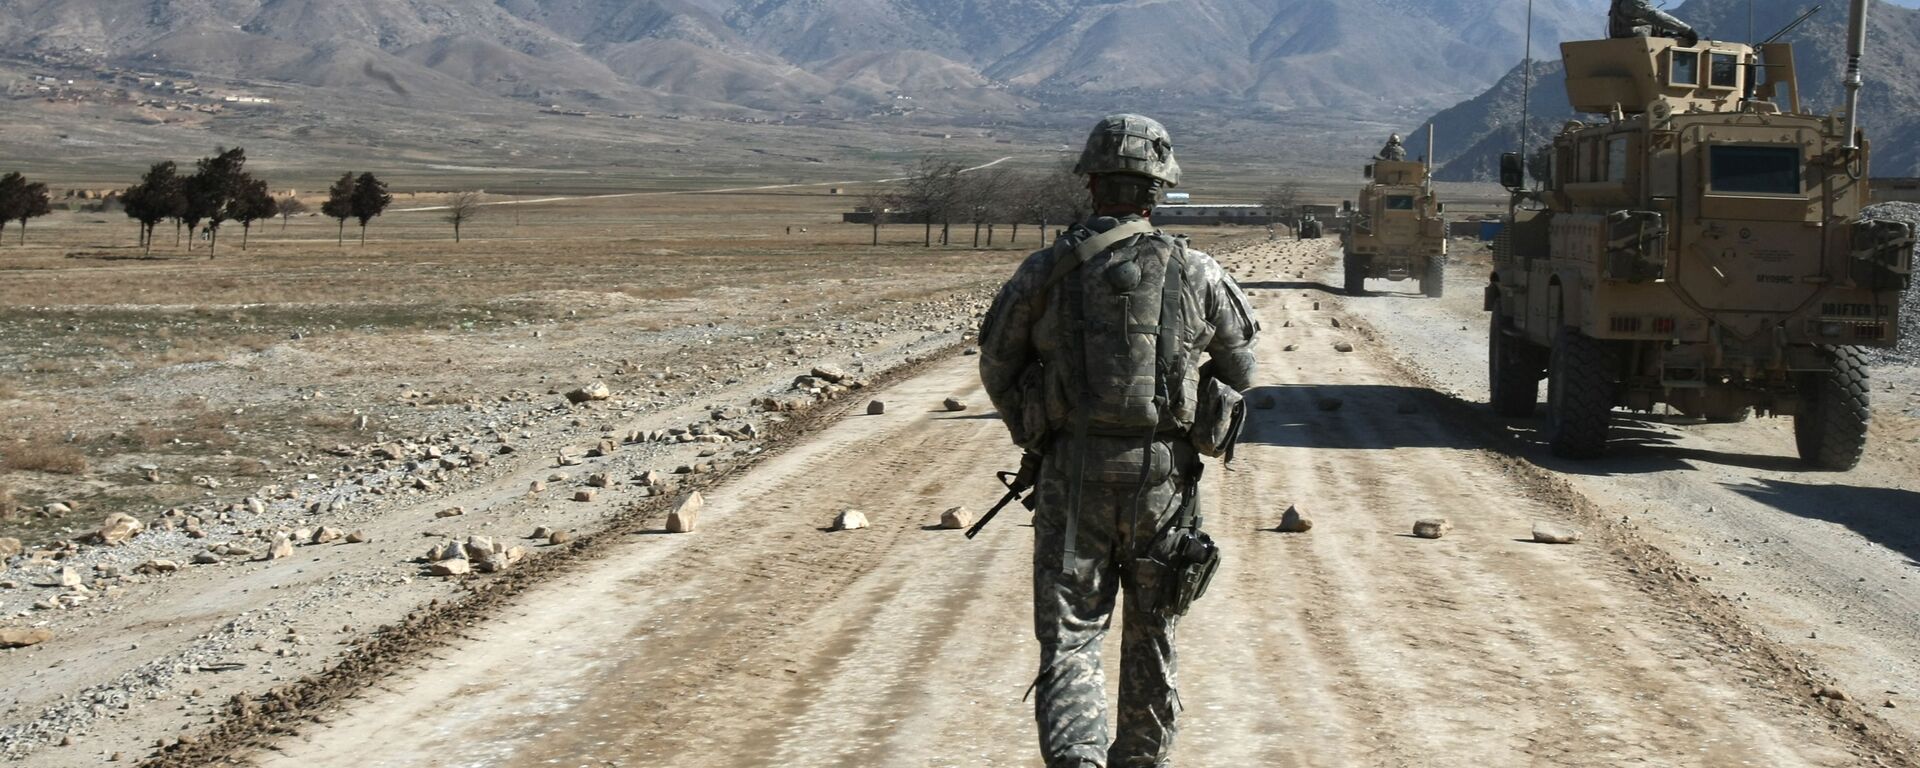 Американский солдат идет по строящейся дороге возле Баграма, примерно в 60 км от Кабула, Афганистан - Sputnik Қазақстан, 1920, 08.07.2021